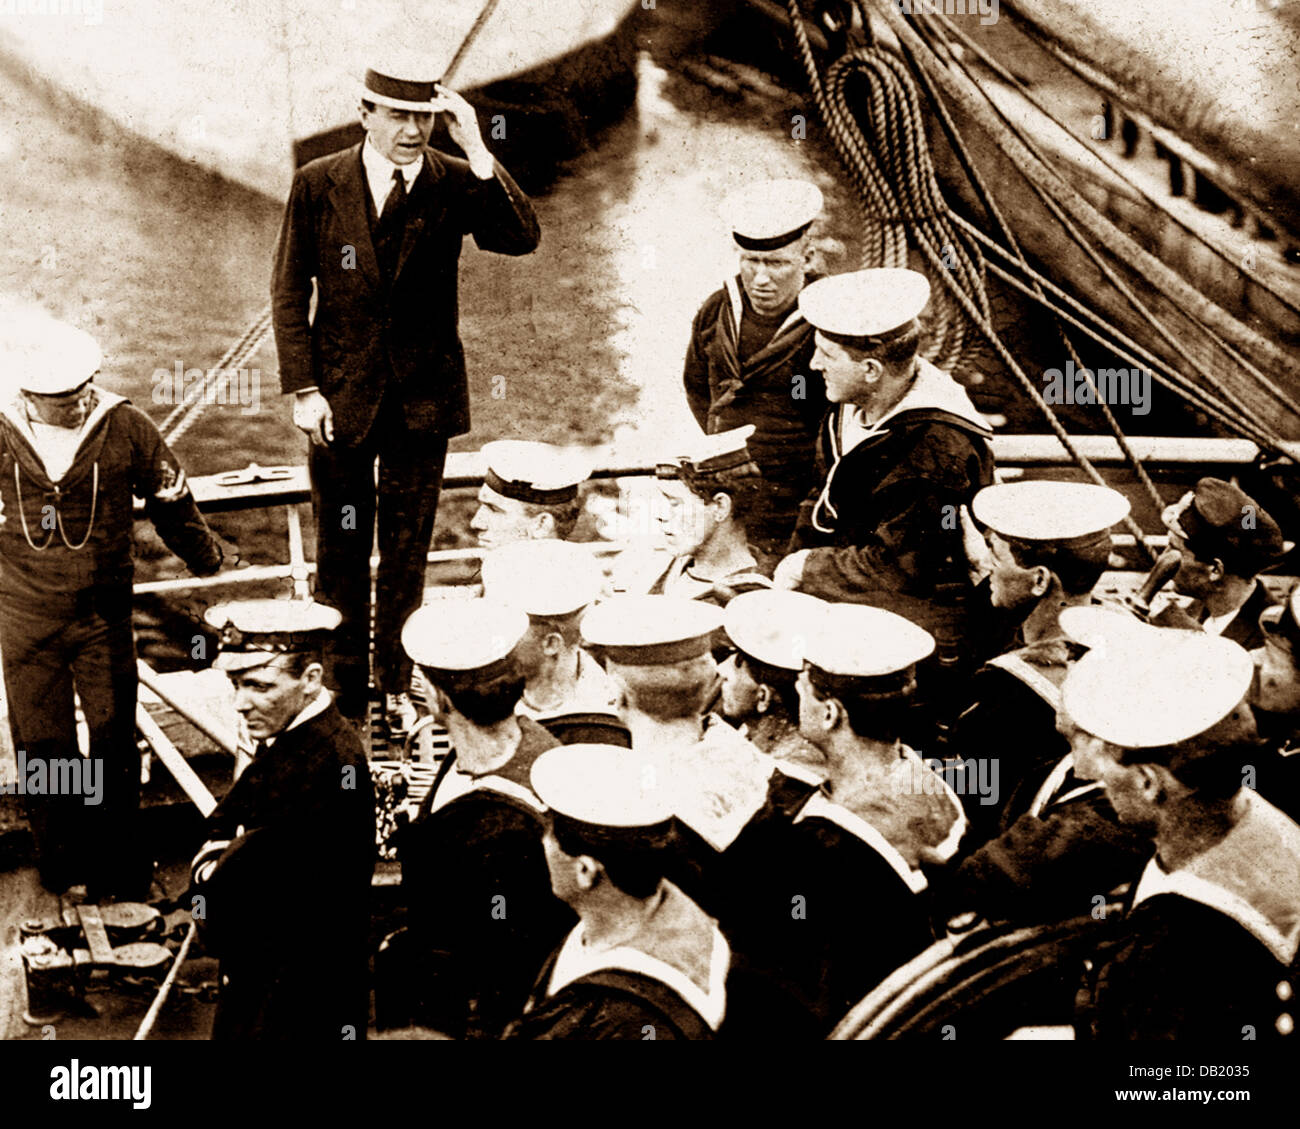 L'expédition de Scott, le Capitaine Scott sur l'équipage du Terra Nova avant le départ probablement en juin 1910 Banque D'Images